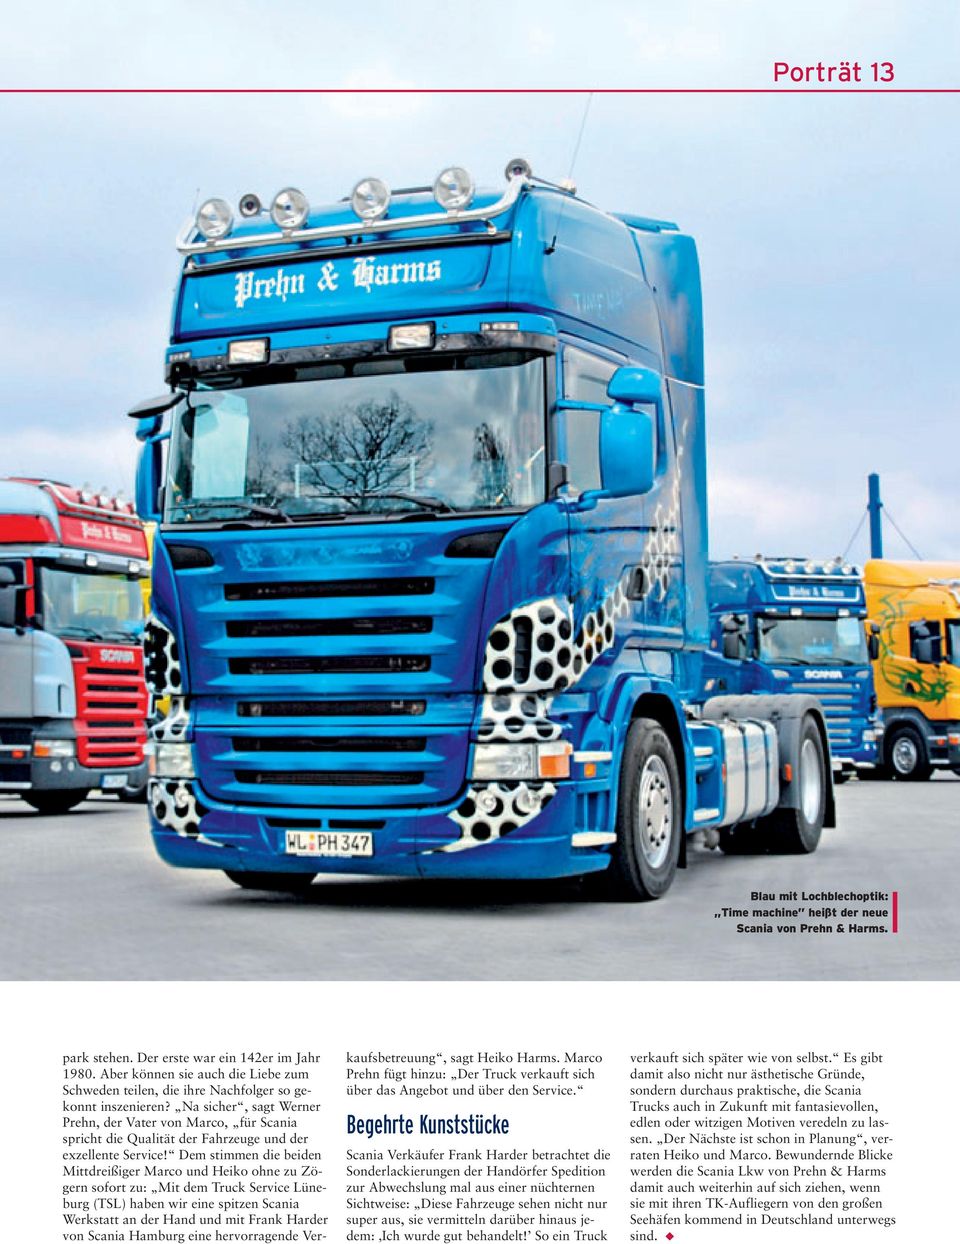 Na sicher, sagt Werner Prehn, der Vater von Marco, für Scania spricht die Qualität der Fahrzeuge und der exzellente Service!